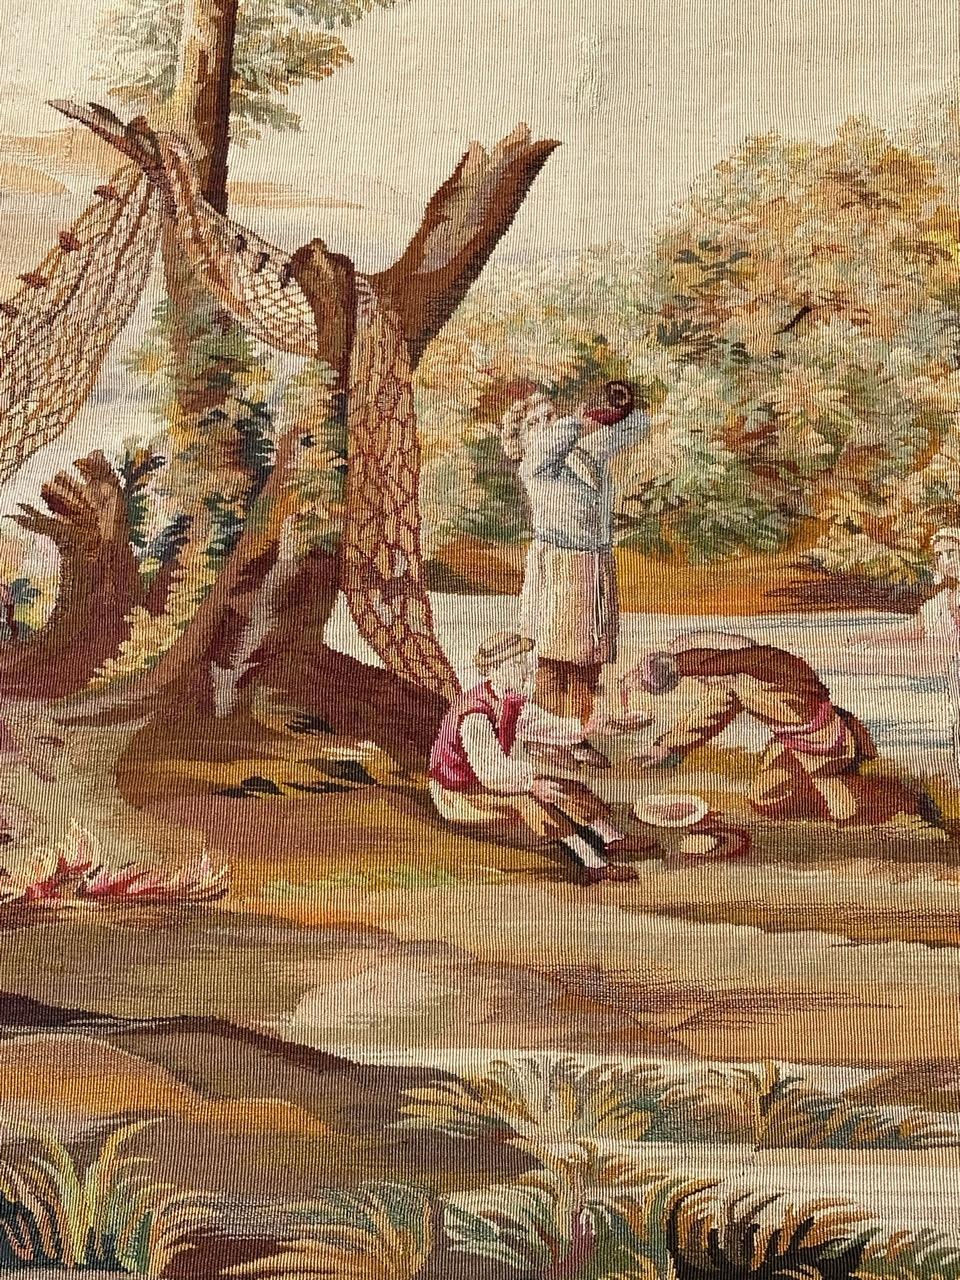 Sehr schöner und feiner Aubusson-Wandteppich mit einem hübschen Muster, das Menschen beim Picknick am Fluss zeigt, und mit schönen Farben, vollständig und fein handgewebt mit Wolle und Seide, in Aubusson-Werkstätten.

✨✨✨
